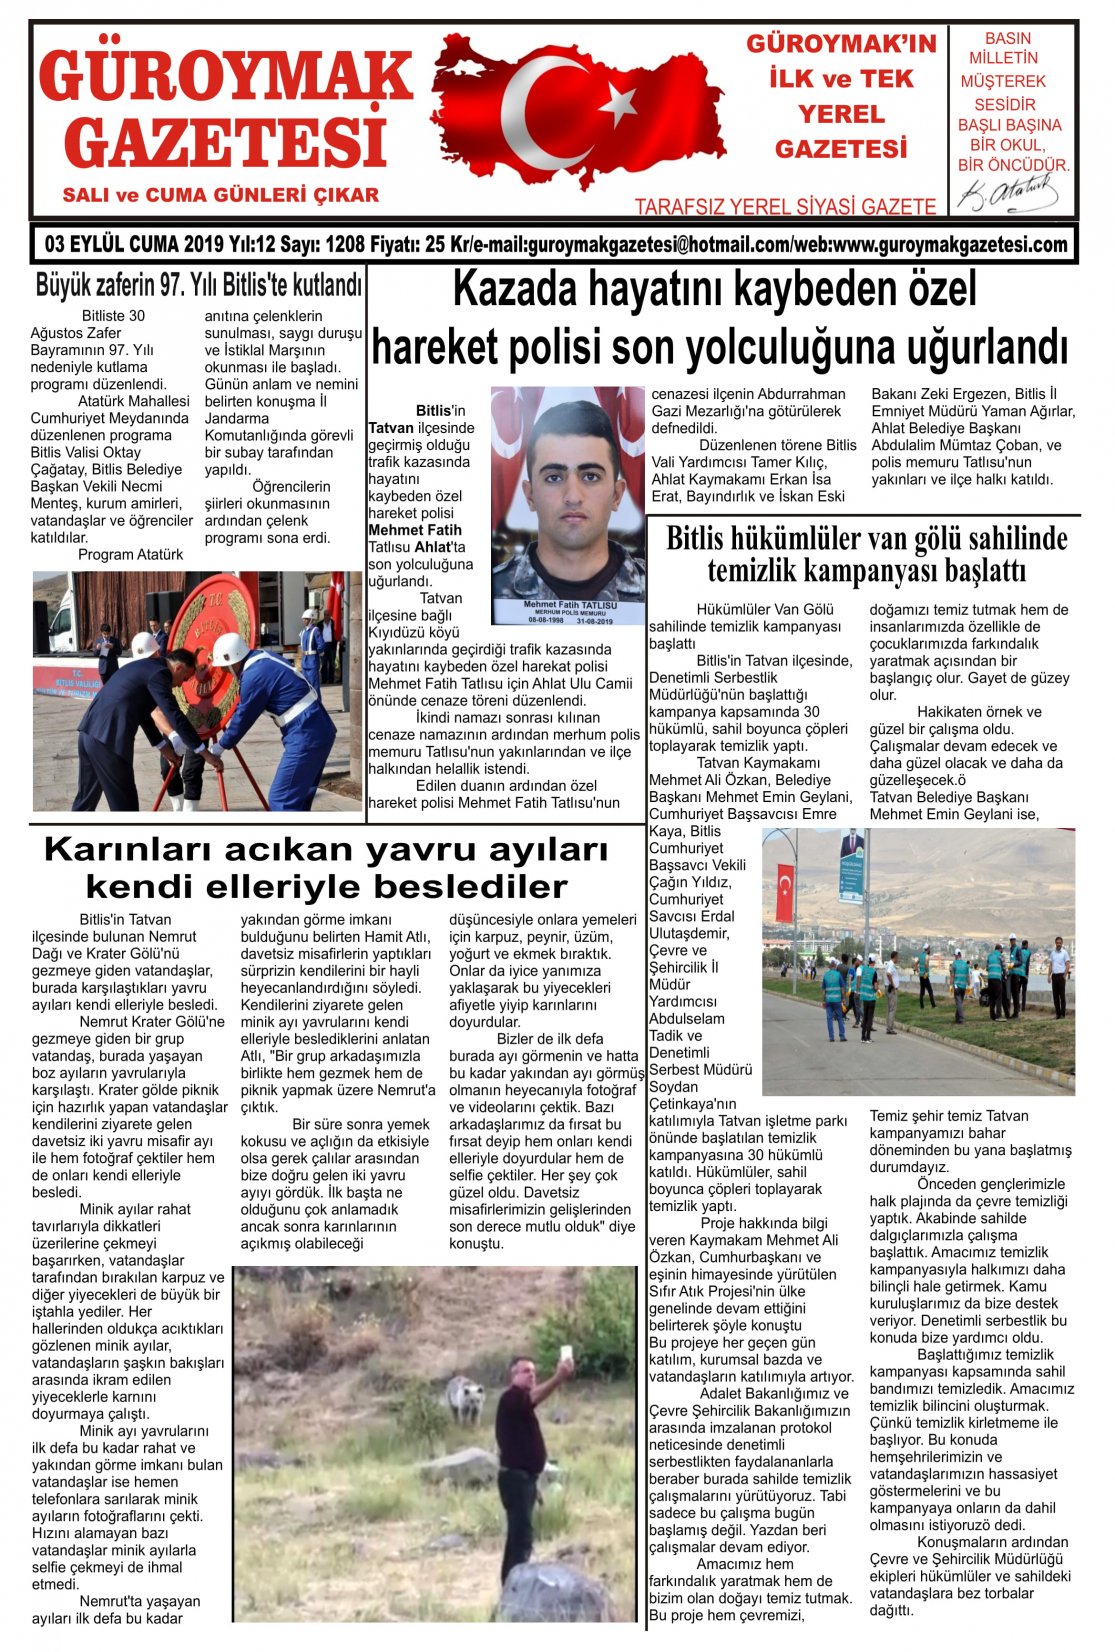 Güroymak Gazetesi 1.jpg Sayılı Gazete Küpürü